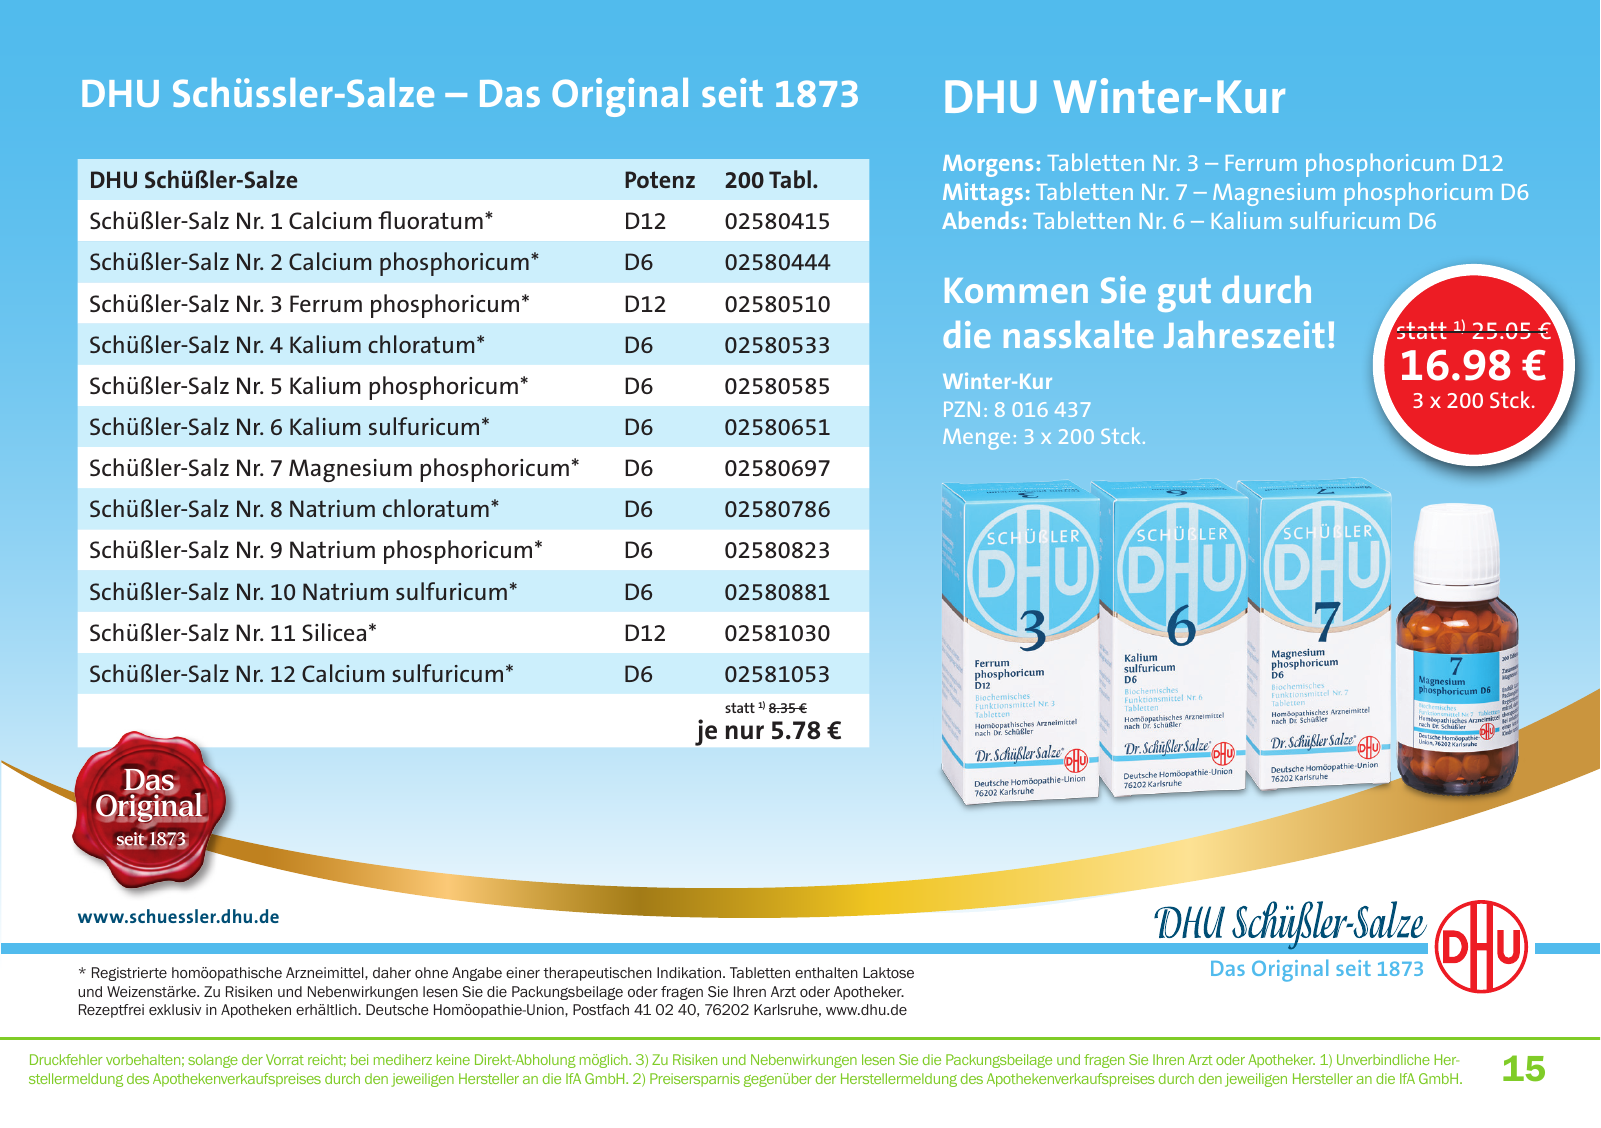 Vorschau Mediherz Katalog Herbst/Winter 2015/16 Seite 15